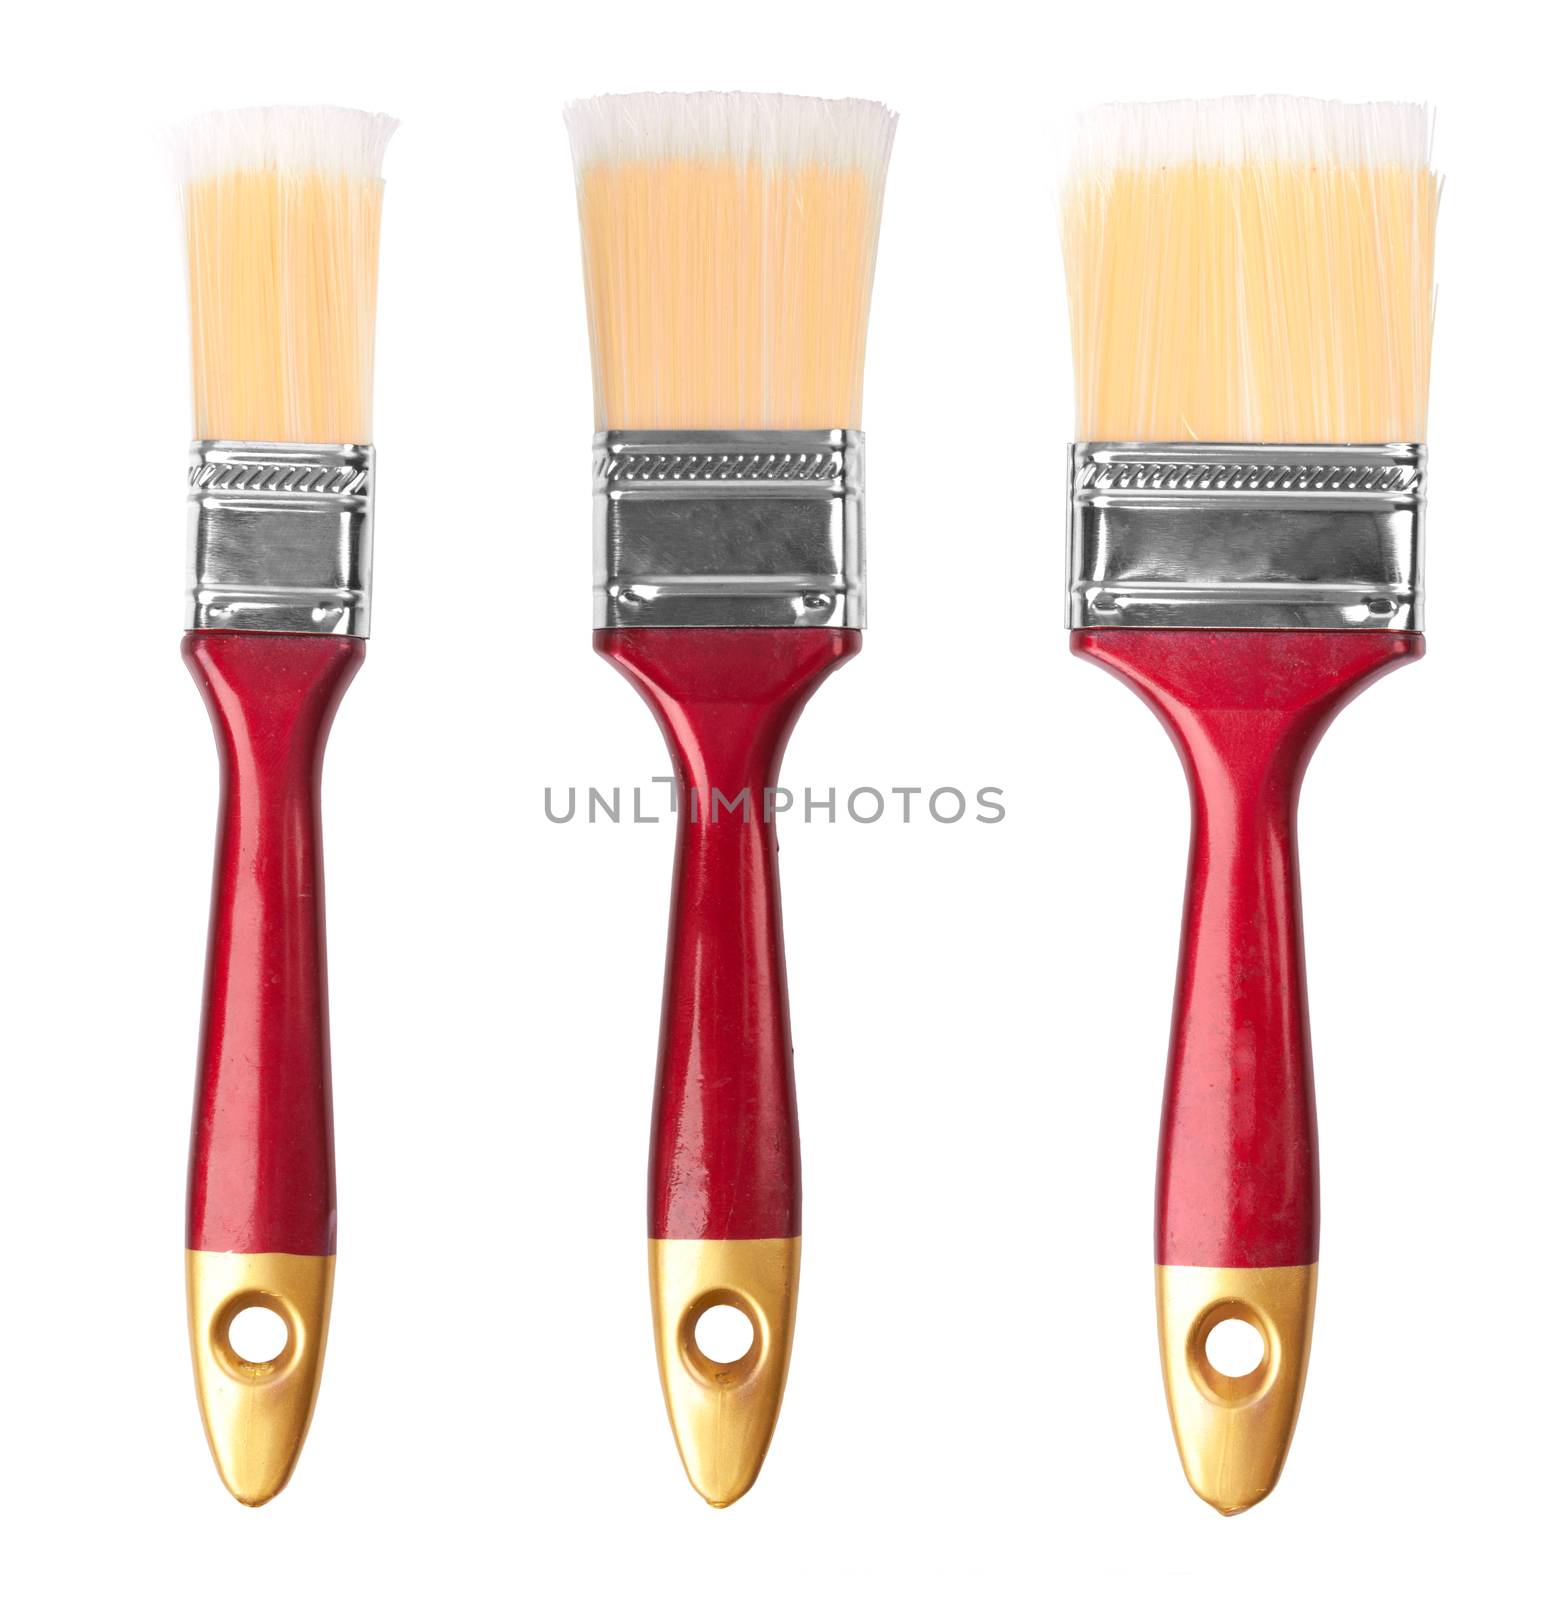 paint brushes on white background